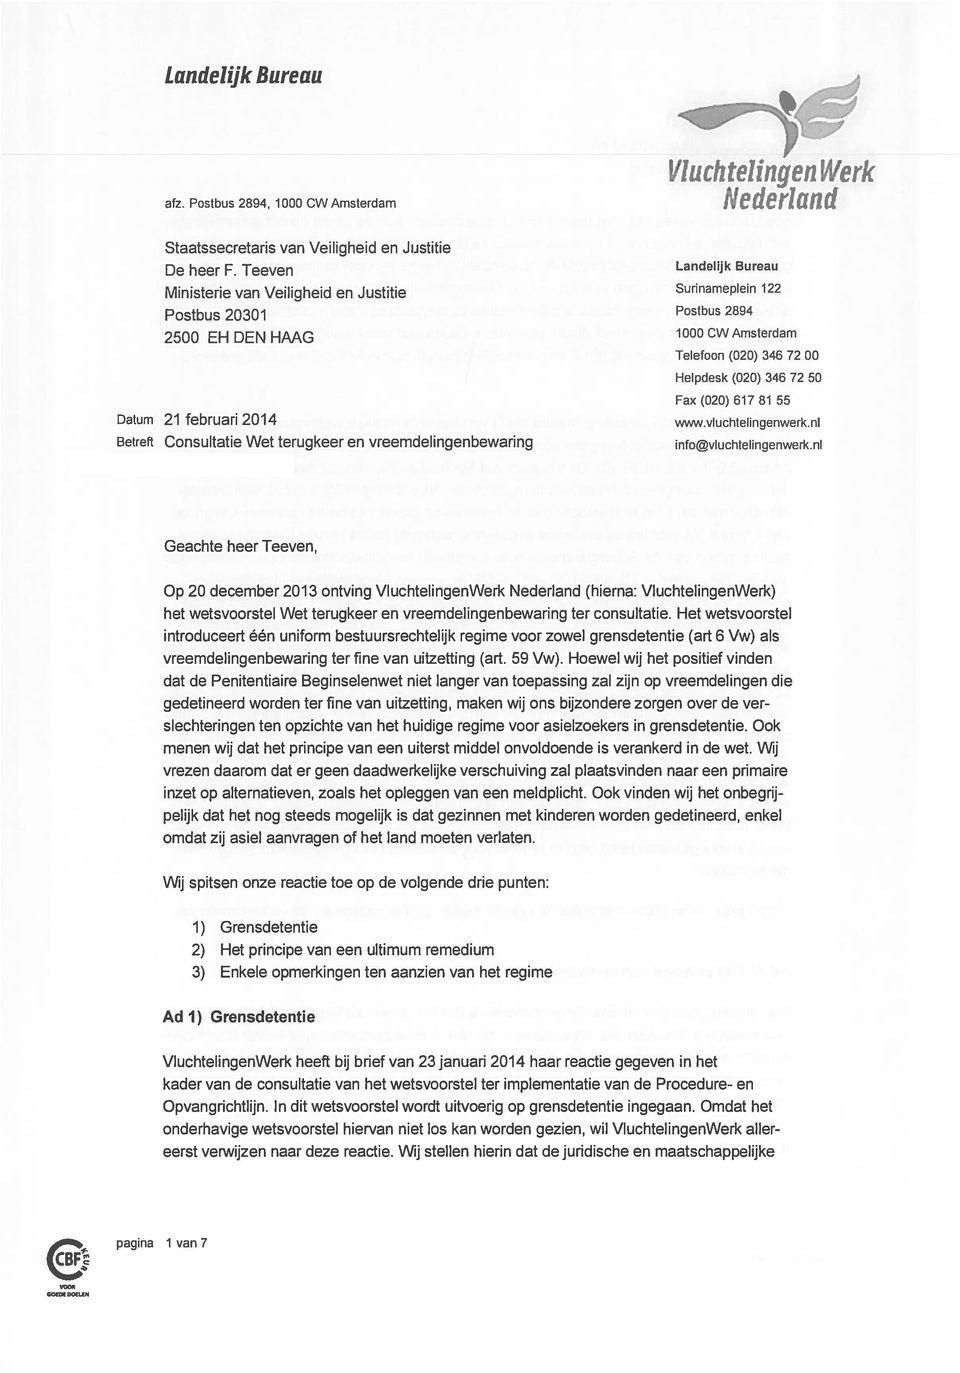 (020) 617 81 55 Datum 21 februari 2014 wv.vluchtelingenwerk.nl info@vluchtelingenwerk.